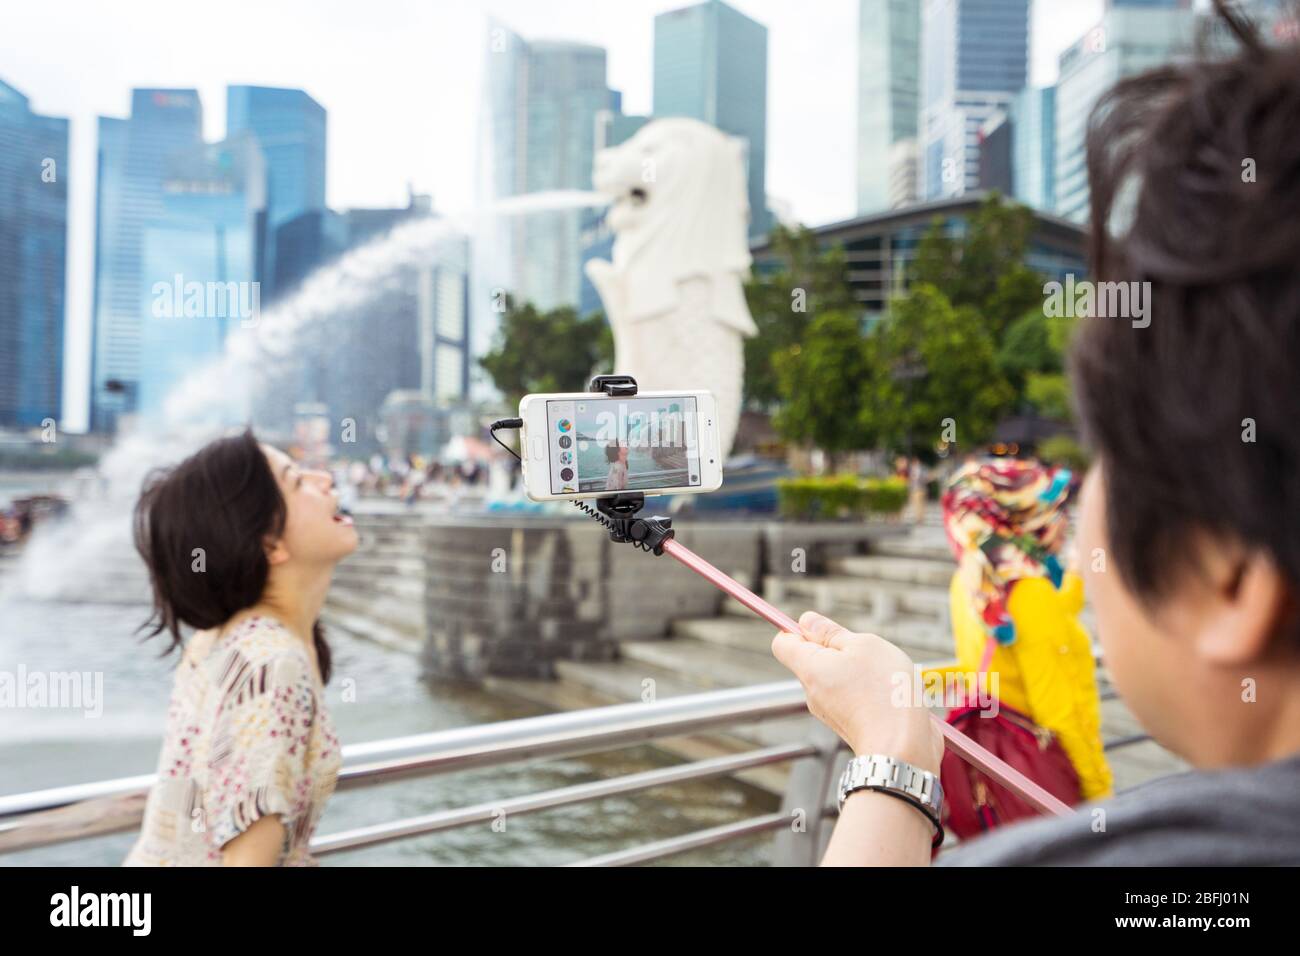 Singapore / Singapore - 15 febbraio 2019: Turisti cinesi asiatici che scattano foto di fronte alla scultura del Leone chiamata Merlion Foto Stock